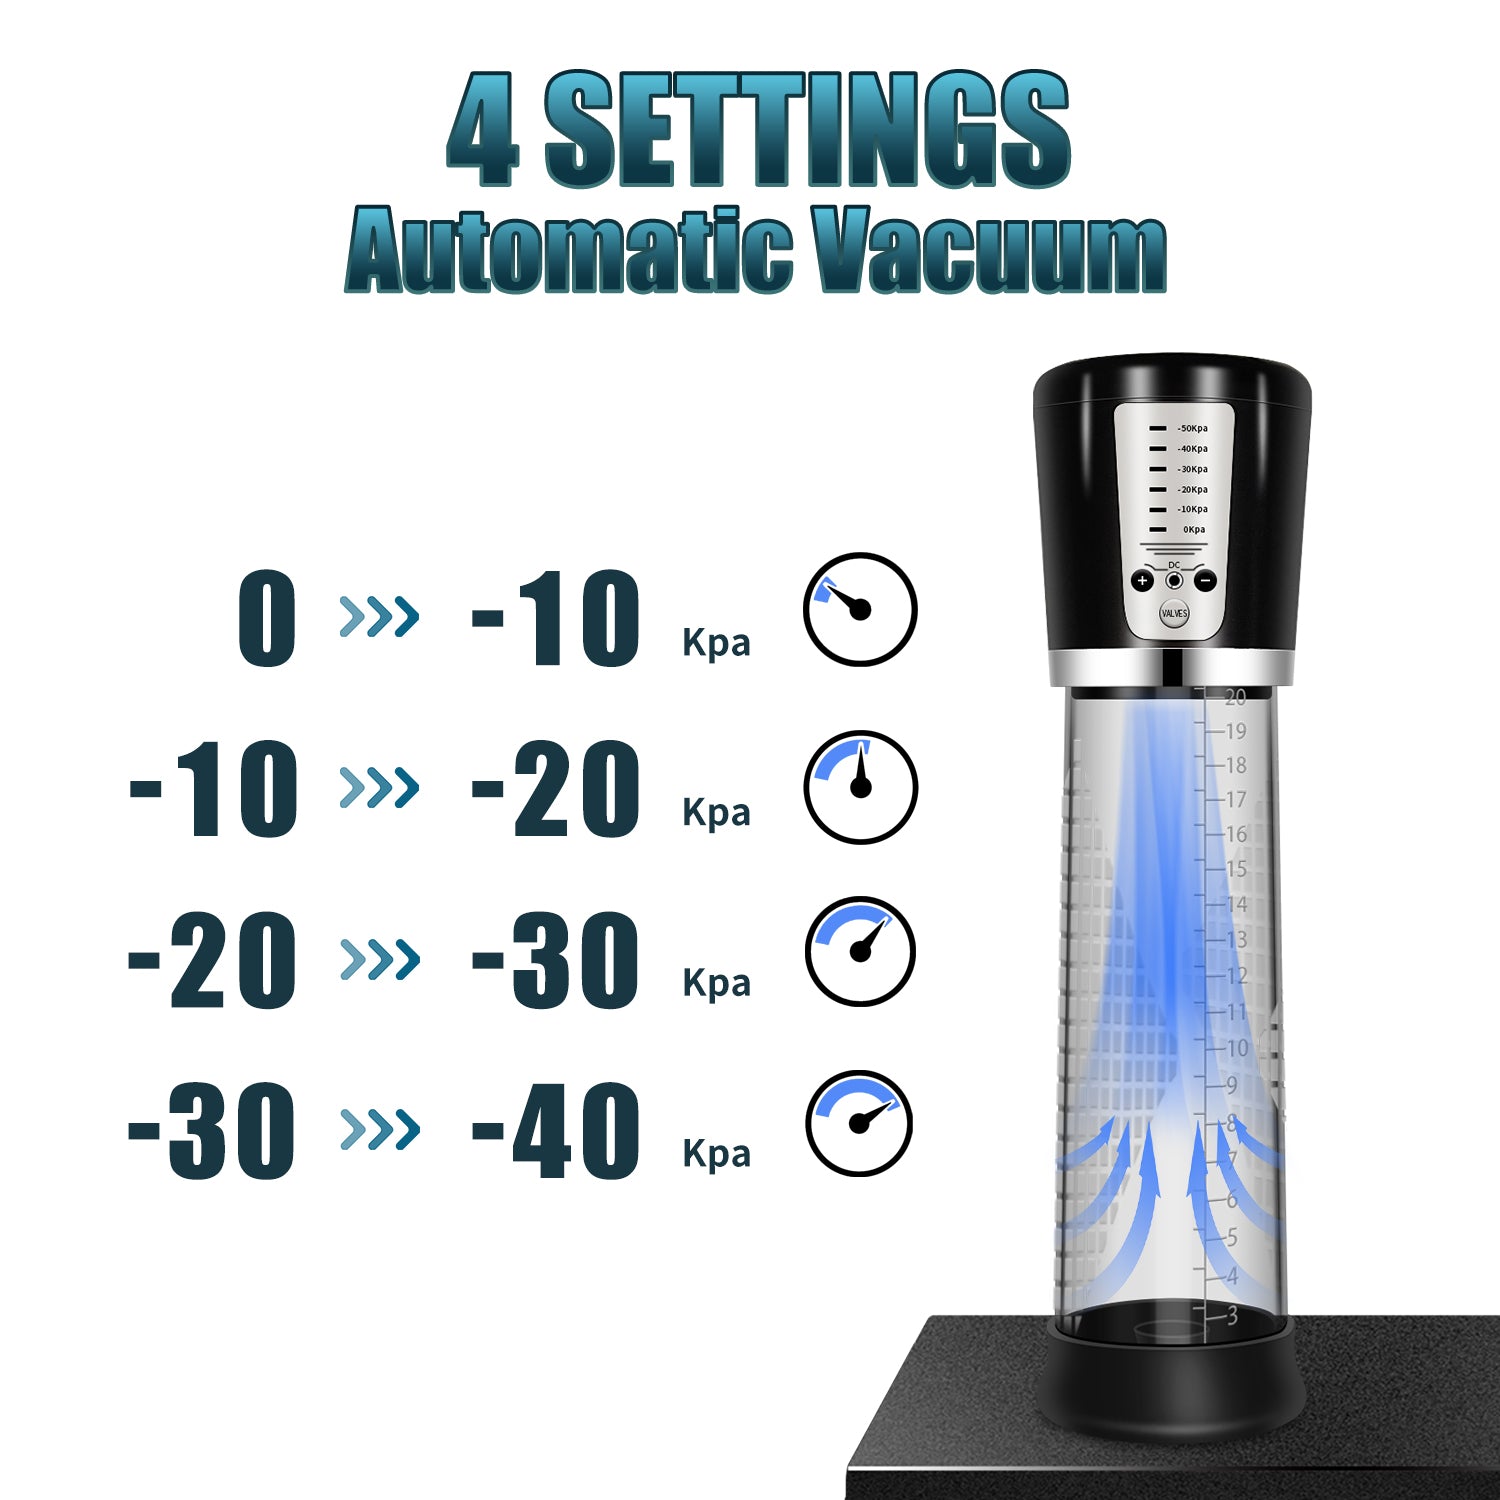 Electric Vacuum Penis Pump 4 Settings Auto Vacuum